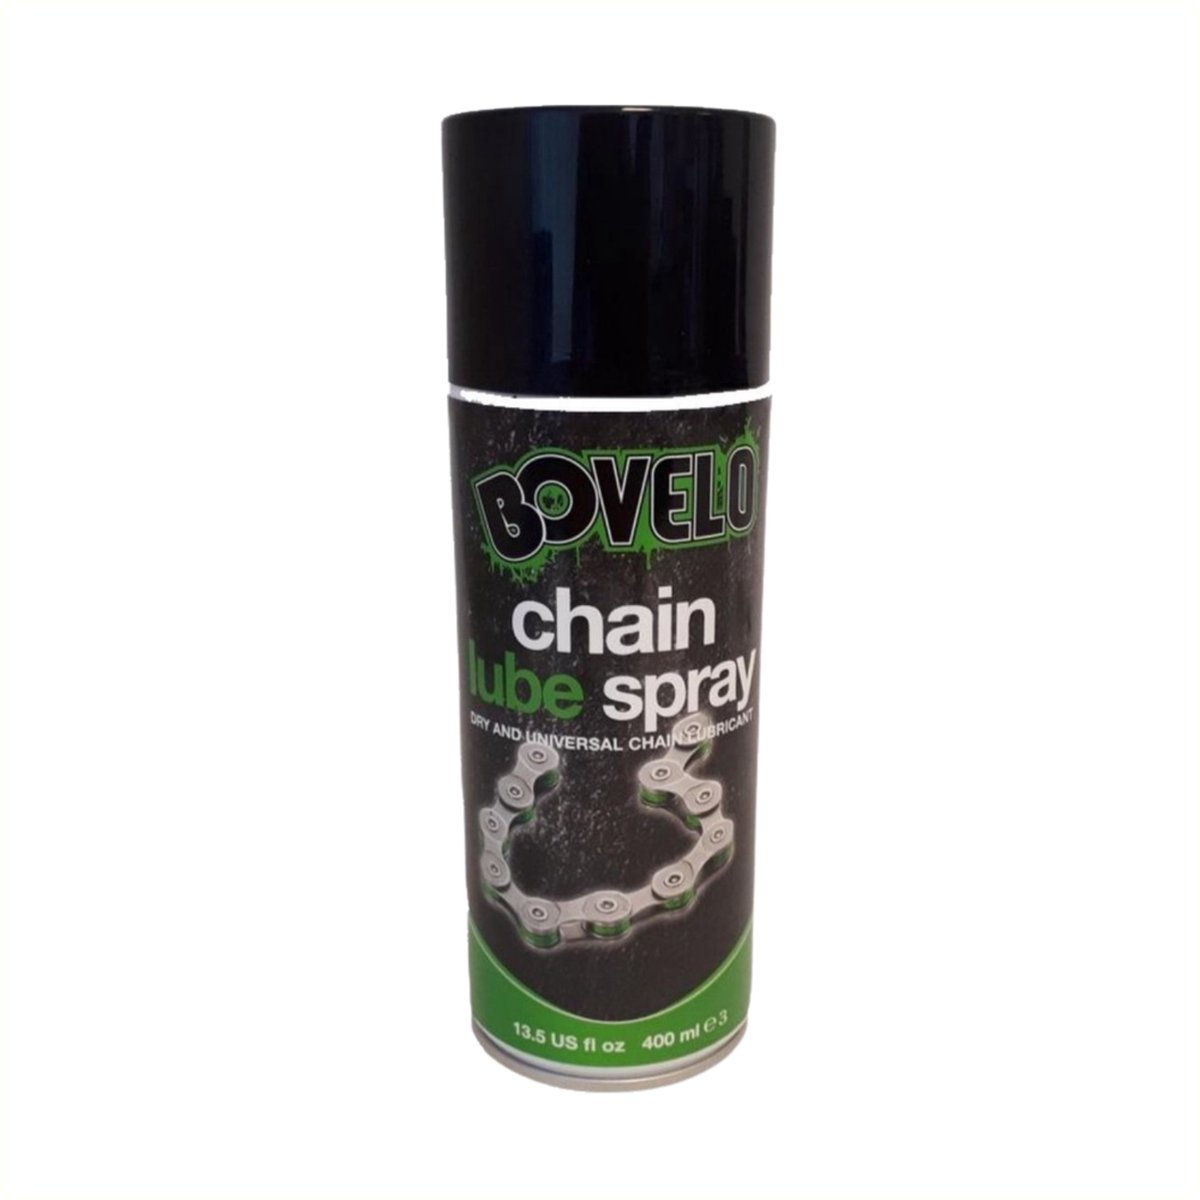 bovelo chain lube spray 400ml